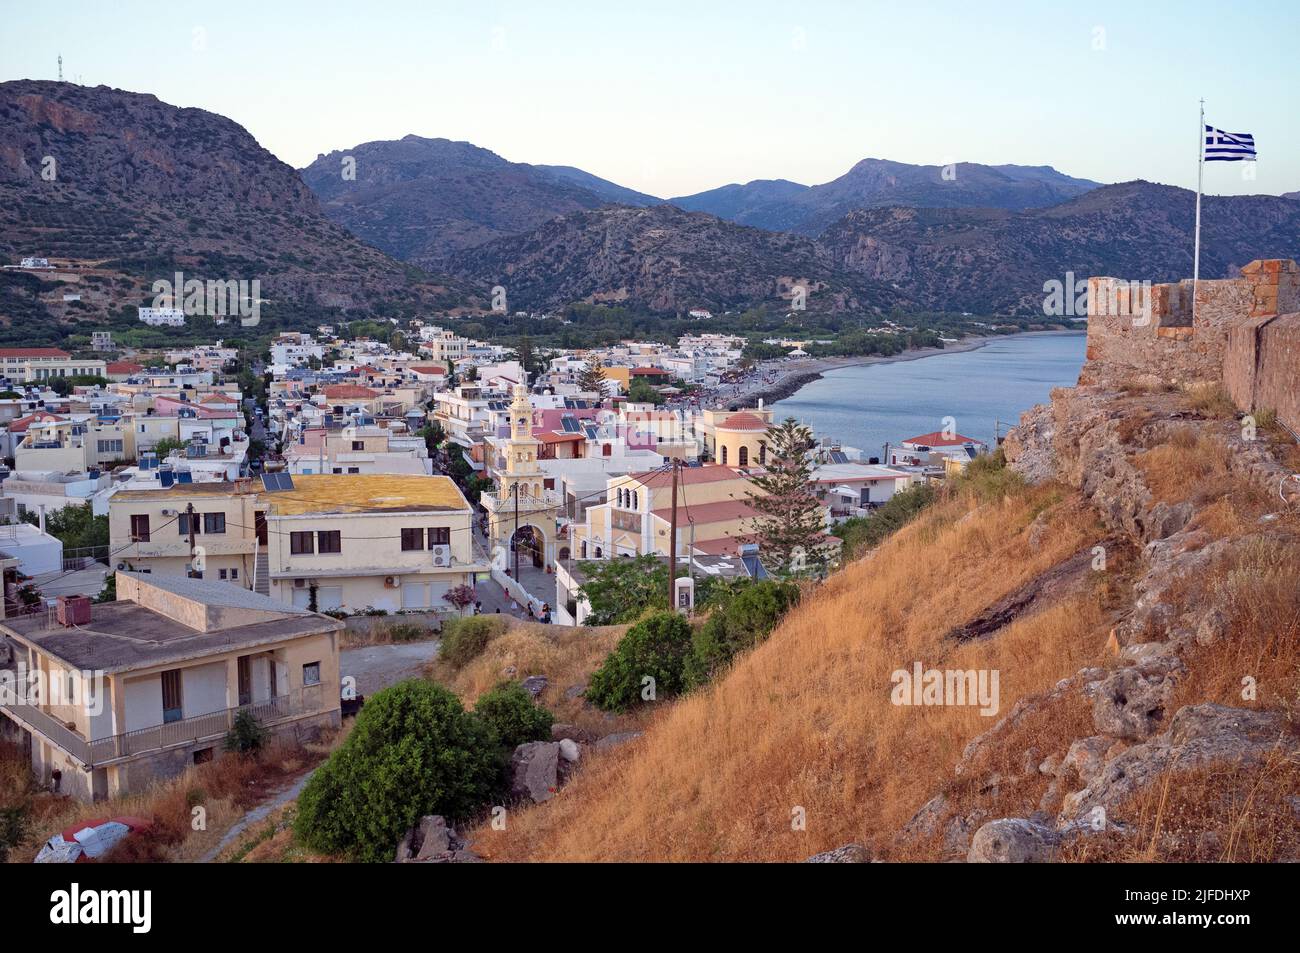 The Cretan town of Palaiochora Stock Photo